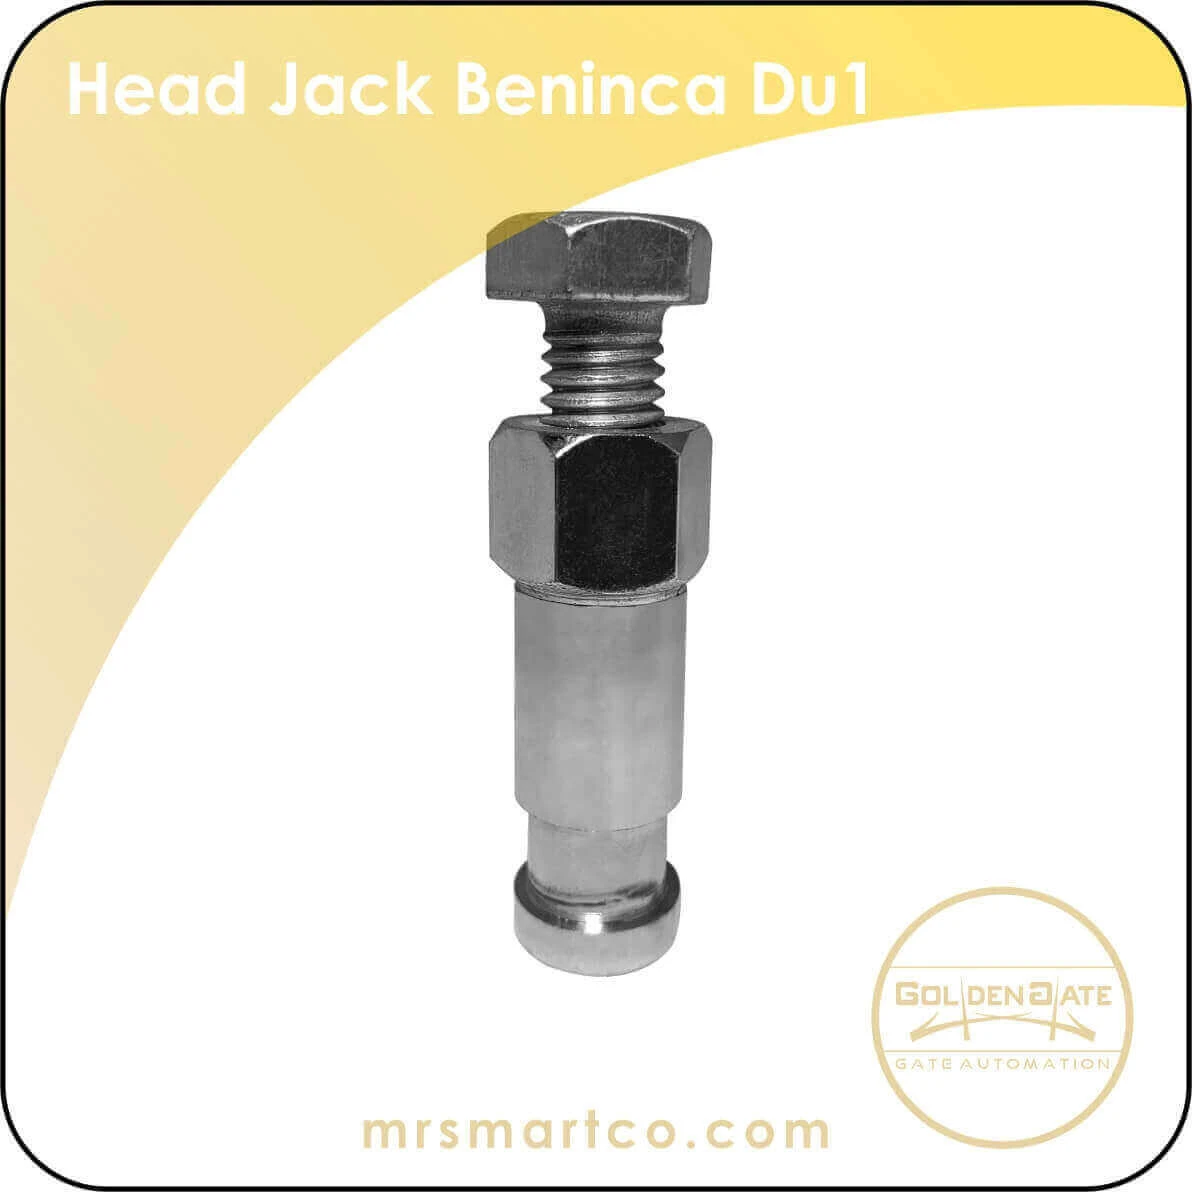 Head Jack Beninca DU1